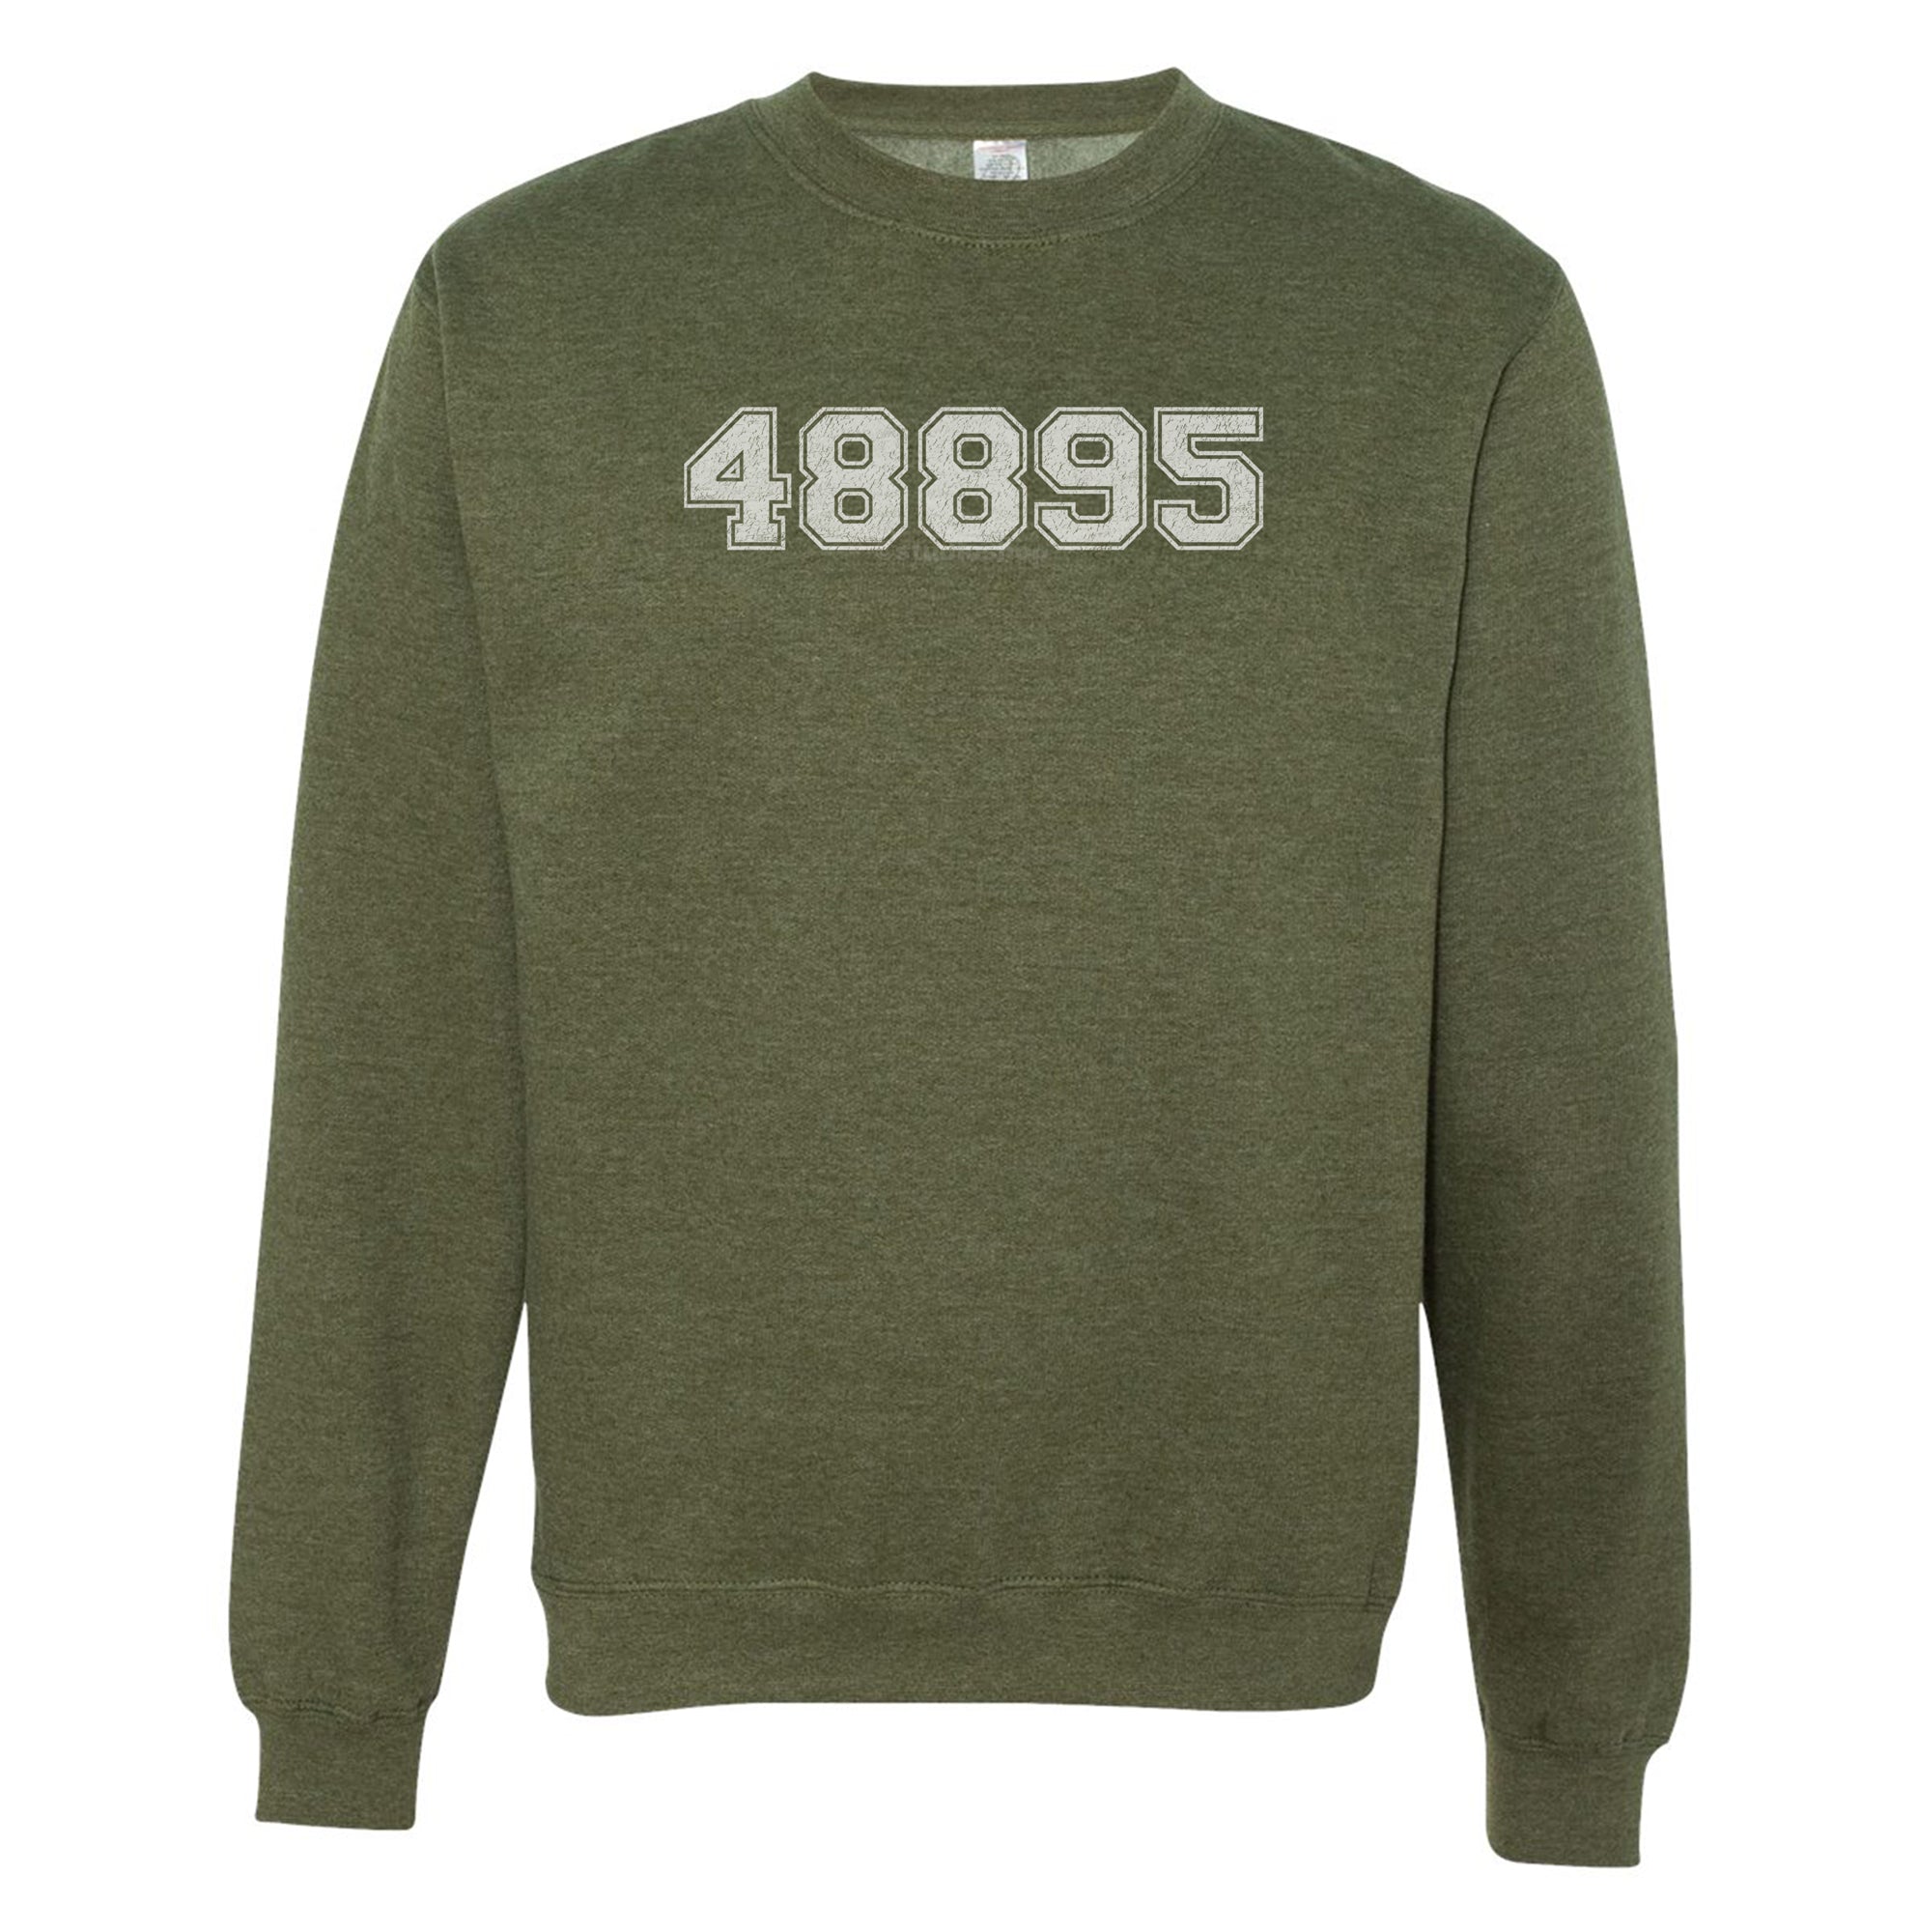 "48895" - Vintage - Adult Sweatshirt